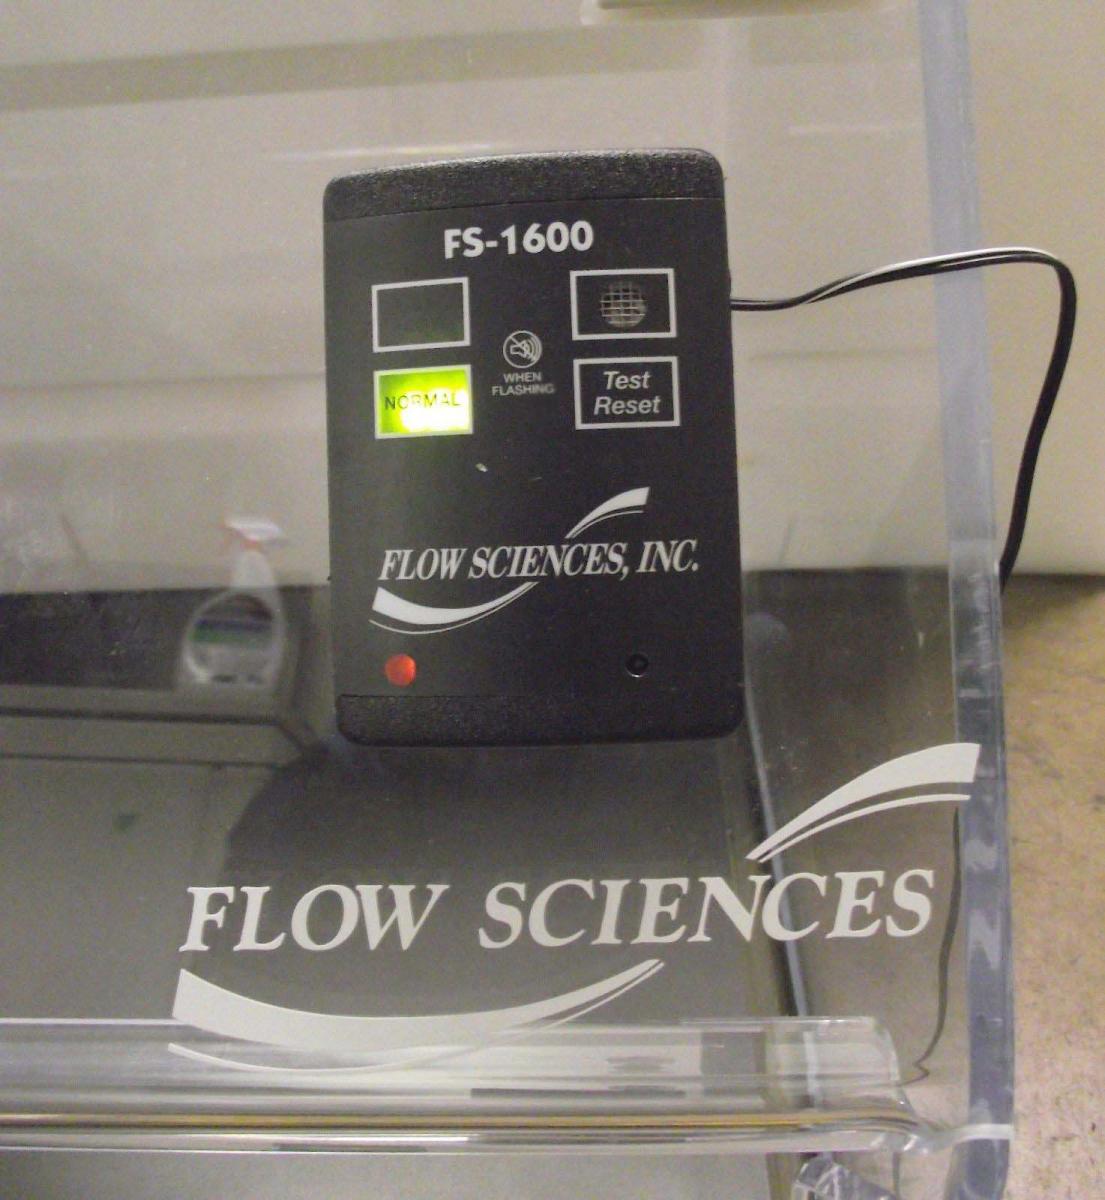 Foto Verwendet FLOW SCIENCES 2-VBSE Zum Verkauf